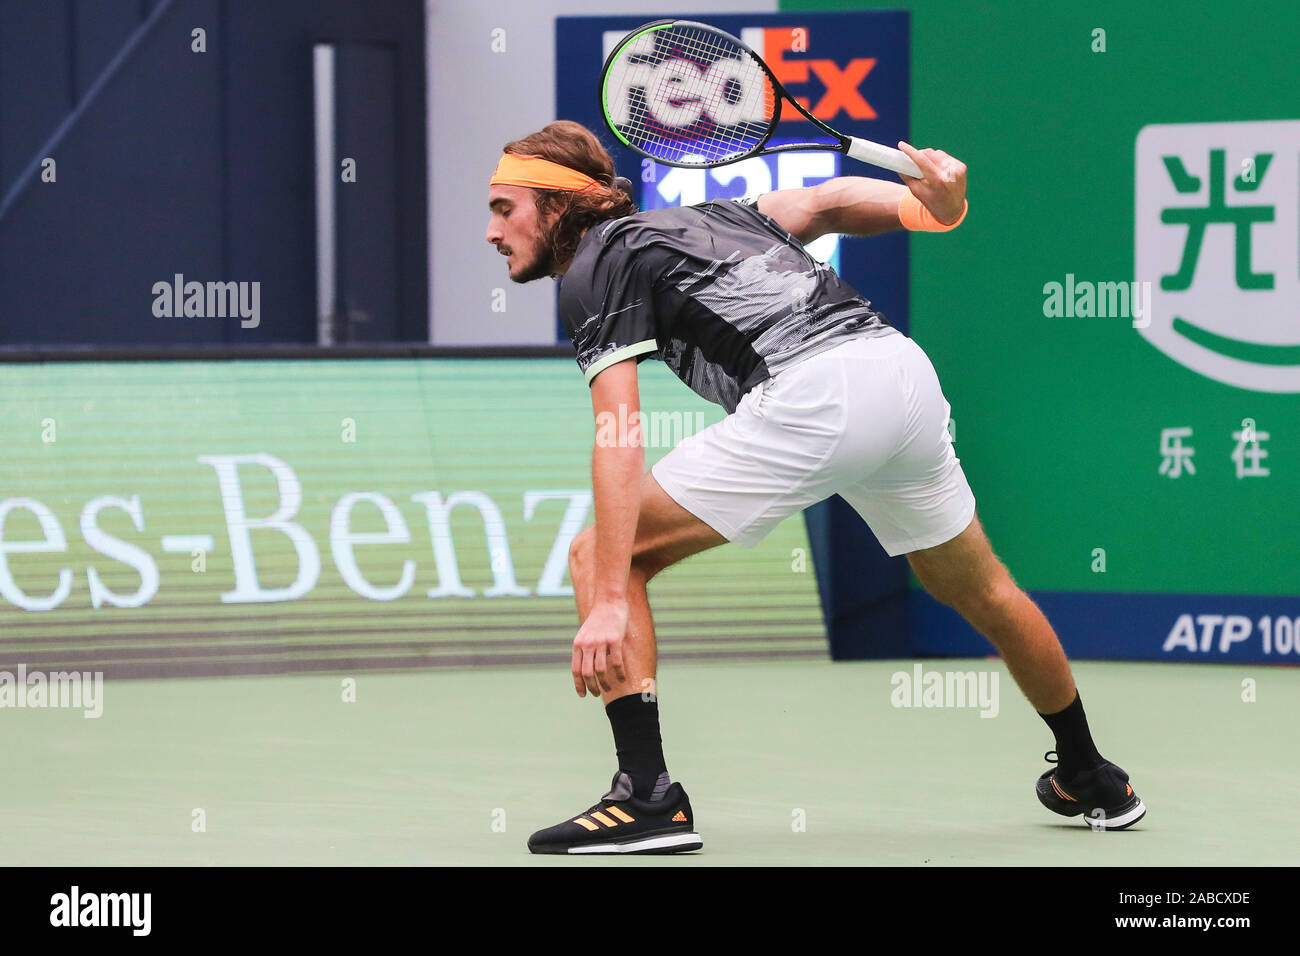 Joueur de tennis professionnel grec Stefanos Tsitsipas rivalise contre joueur de tennis Serbe Novak Djokovic en quart de finale de 2019 Banque D'Images